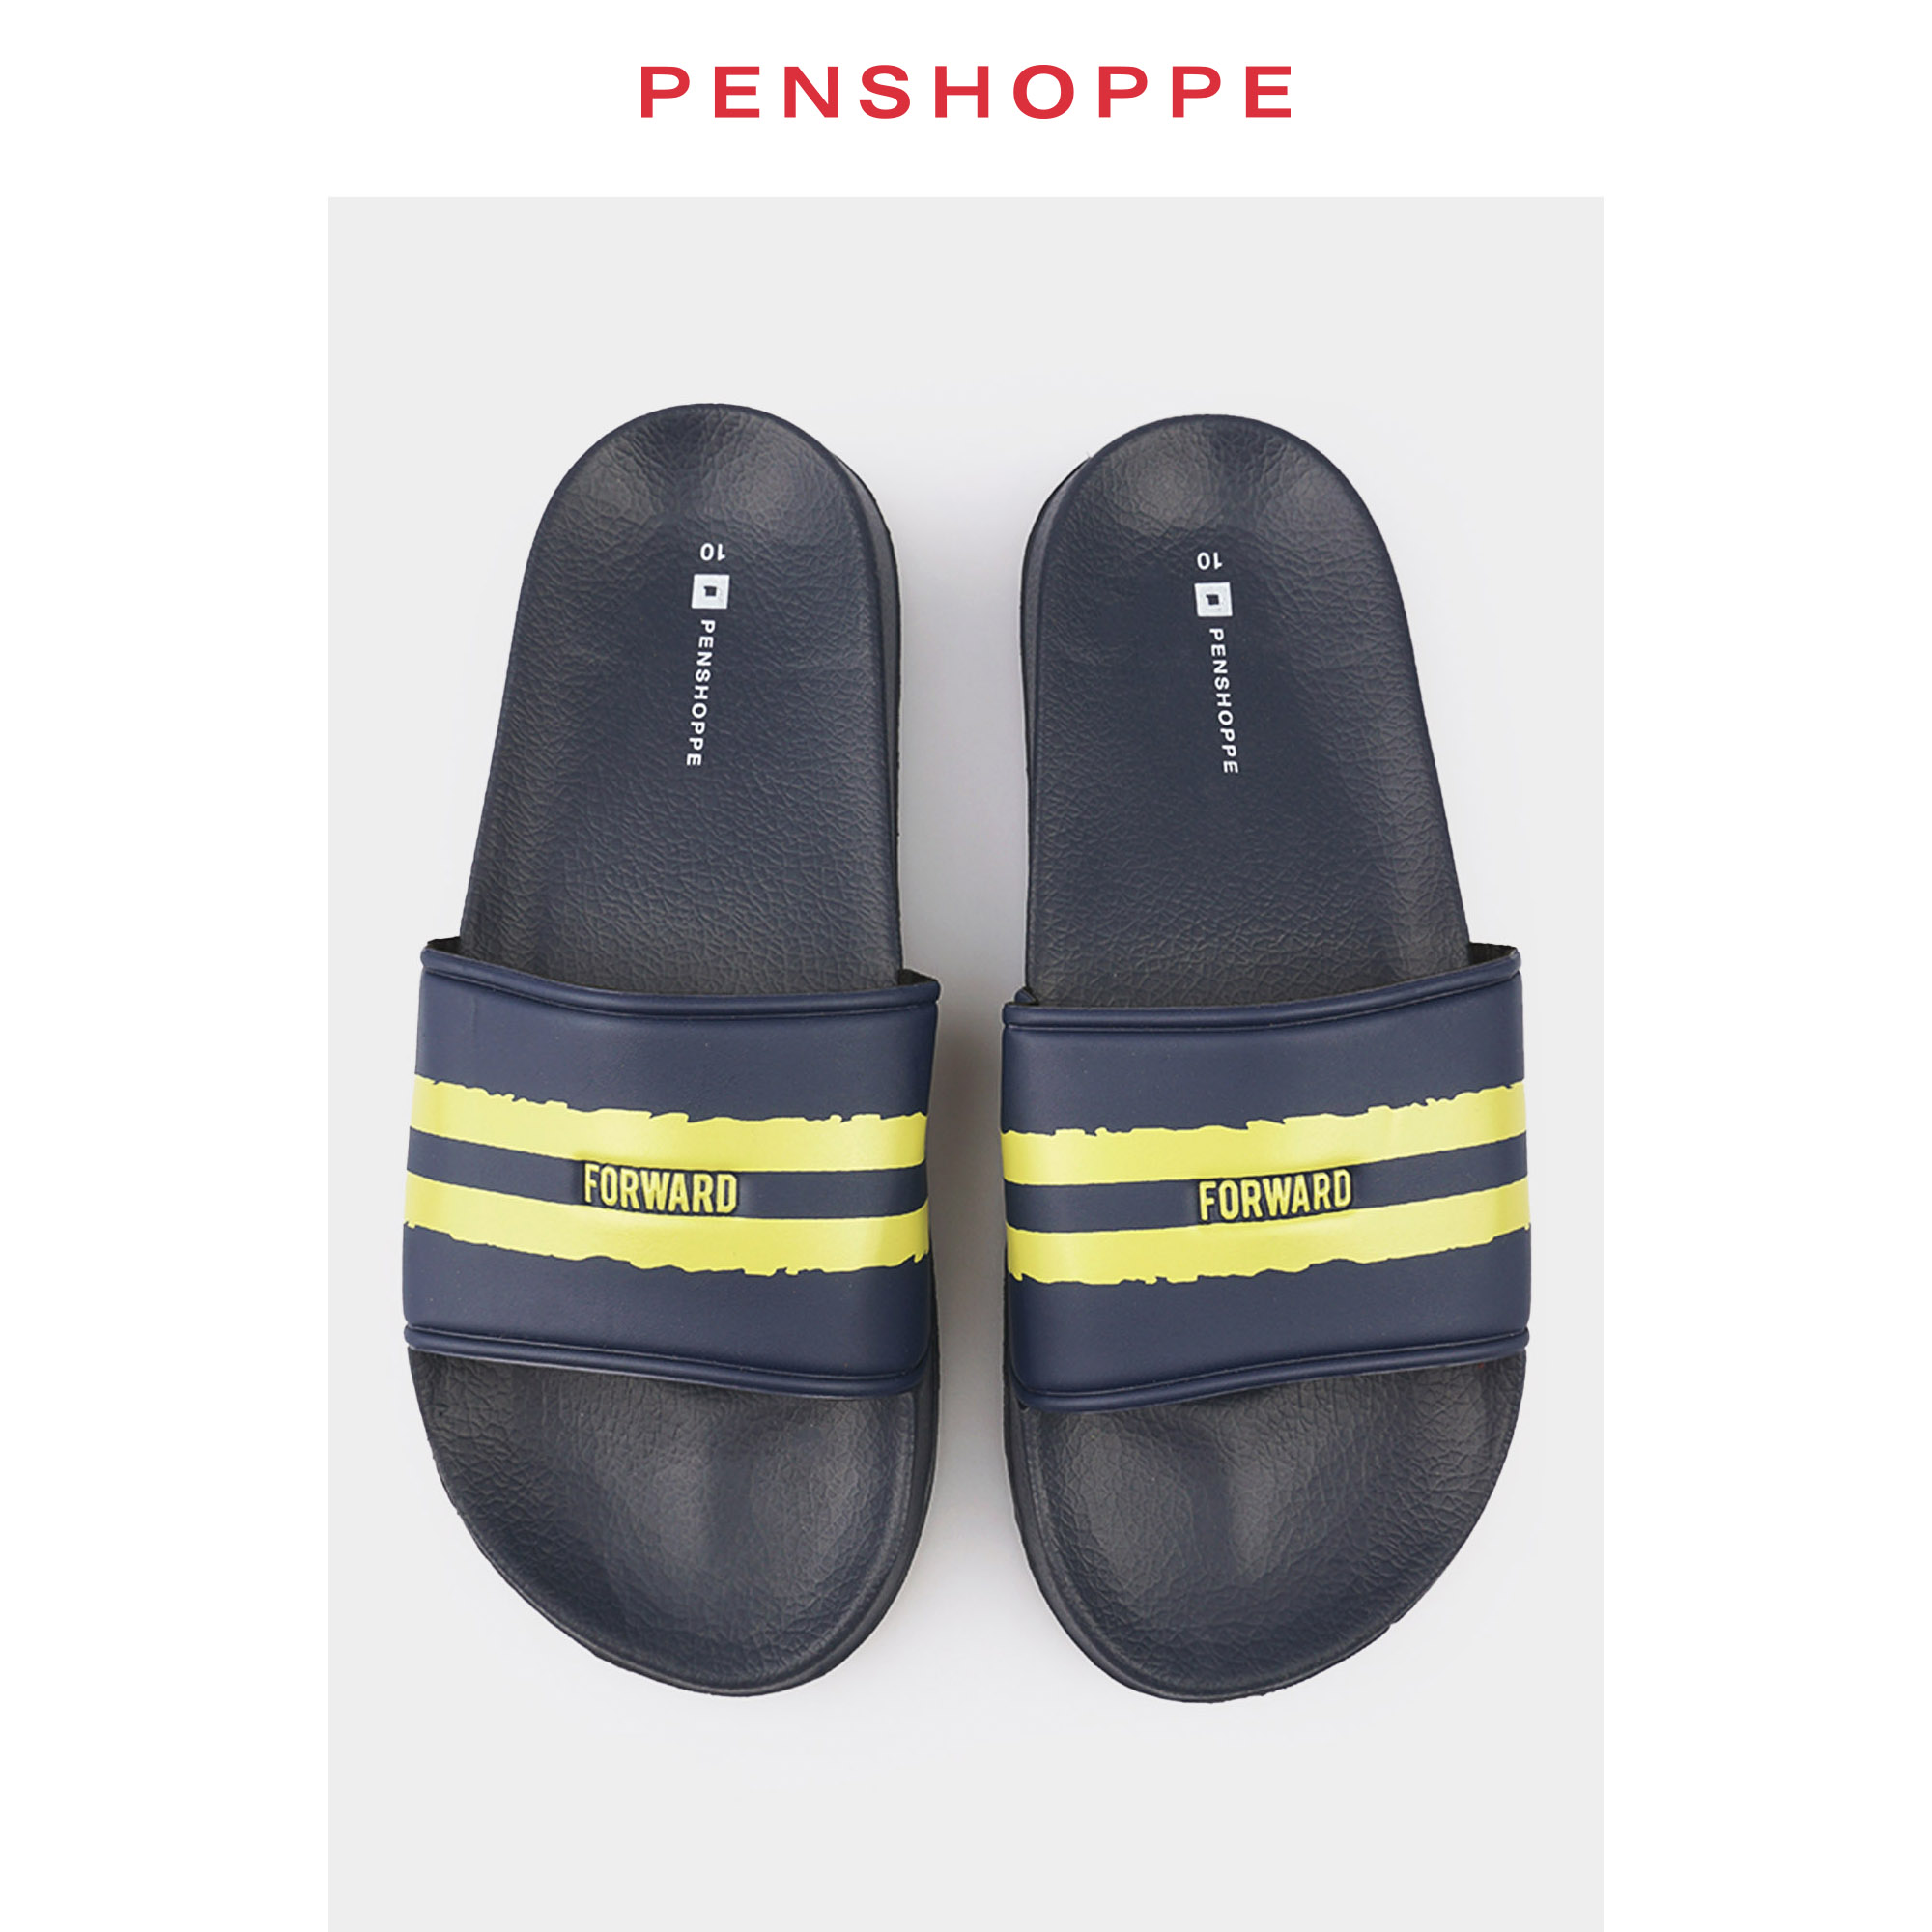 penshoppe slippers for girls